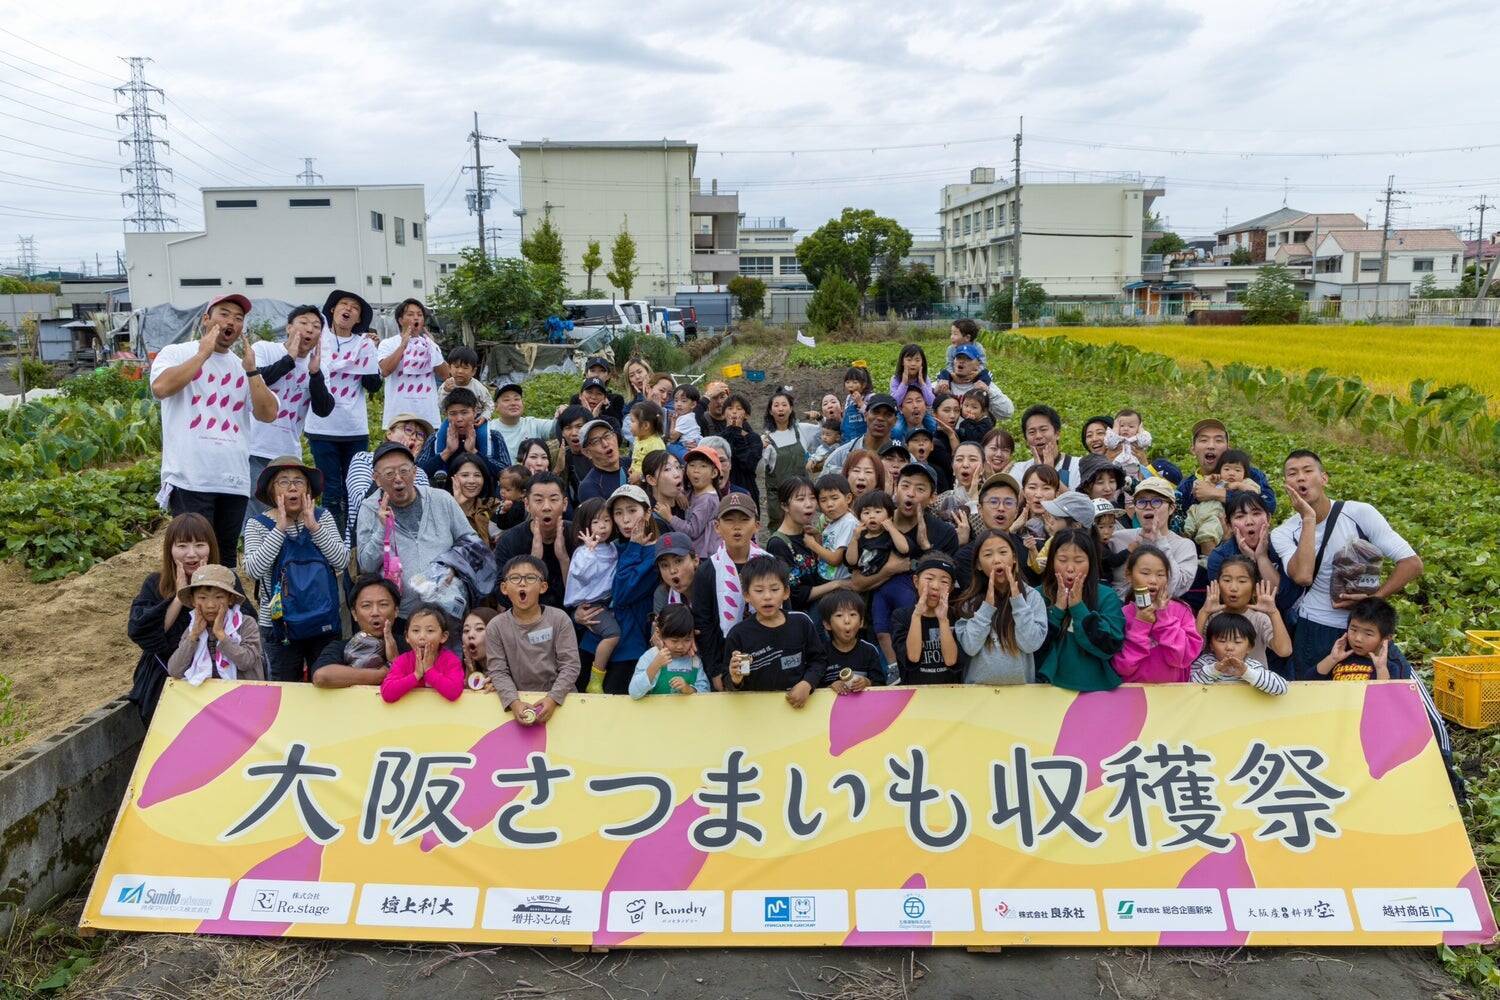 離農者が増える大阪農業の課題に取り組む若手農業集団が手掛けた芋焼酎「阿呆-ahou-」誕生ストーリー。大阪産さつまいも‘’夢シルク‘’にかける夢と想い